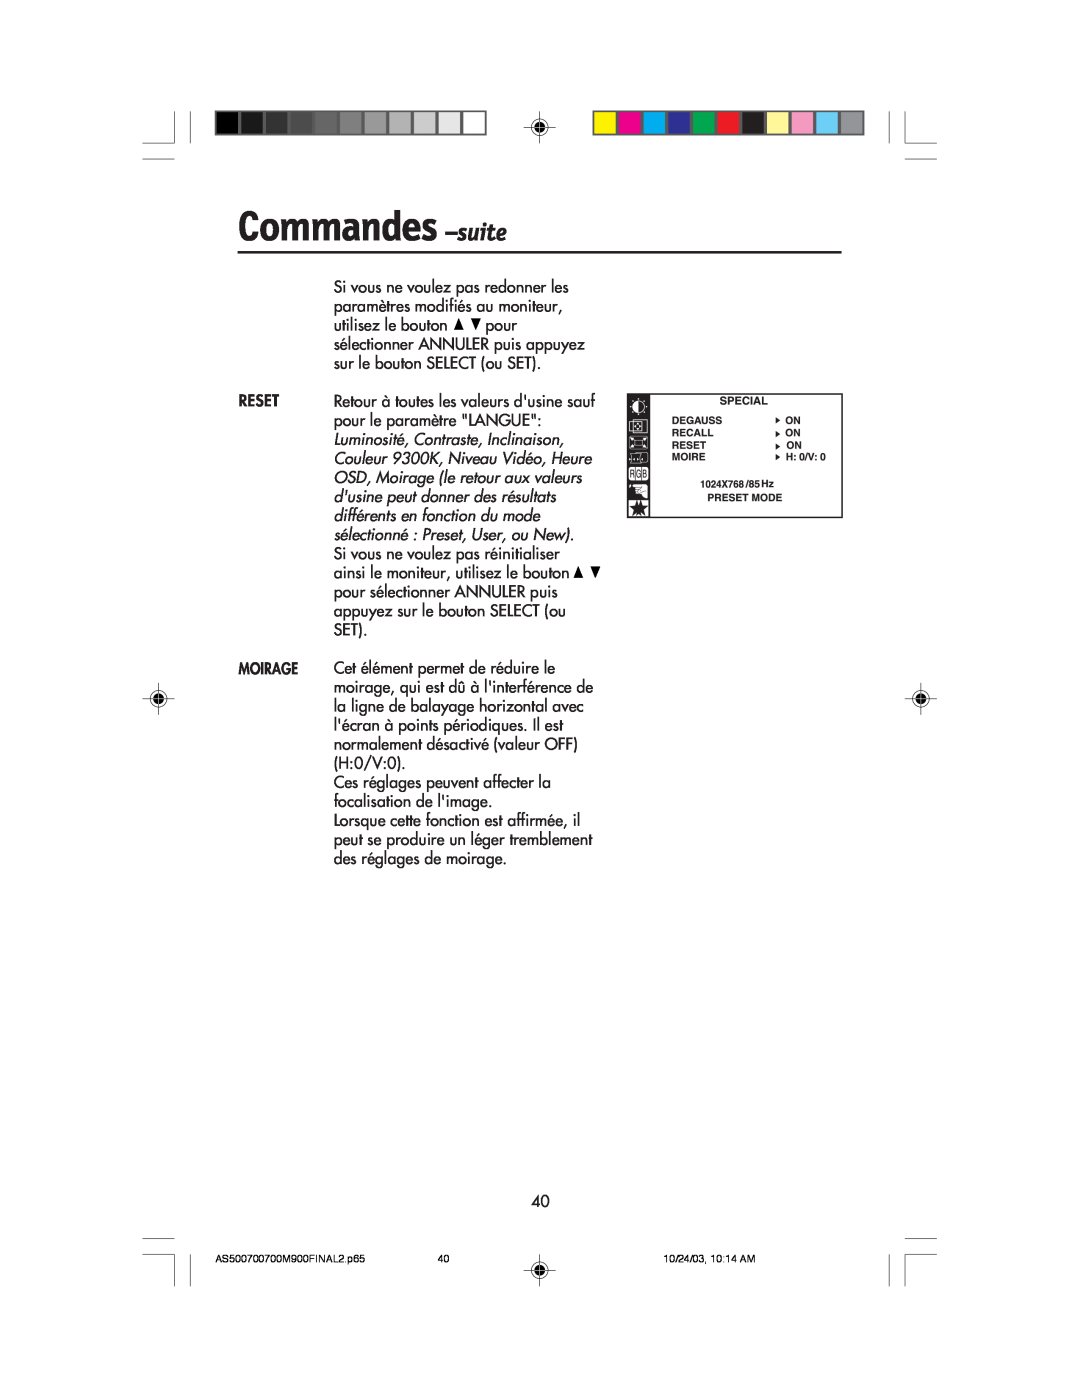 NEC 900, 700, 500 manual Commandes -suite, Reset Moirage 